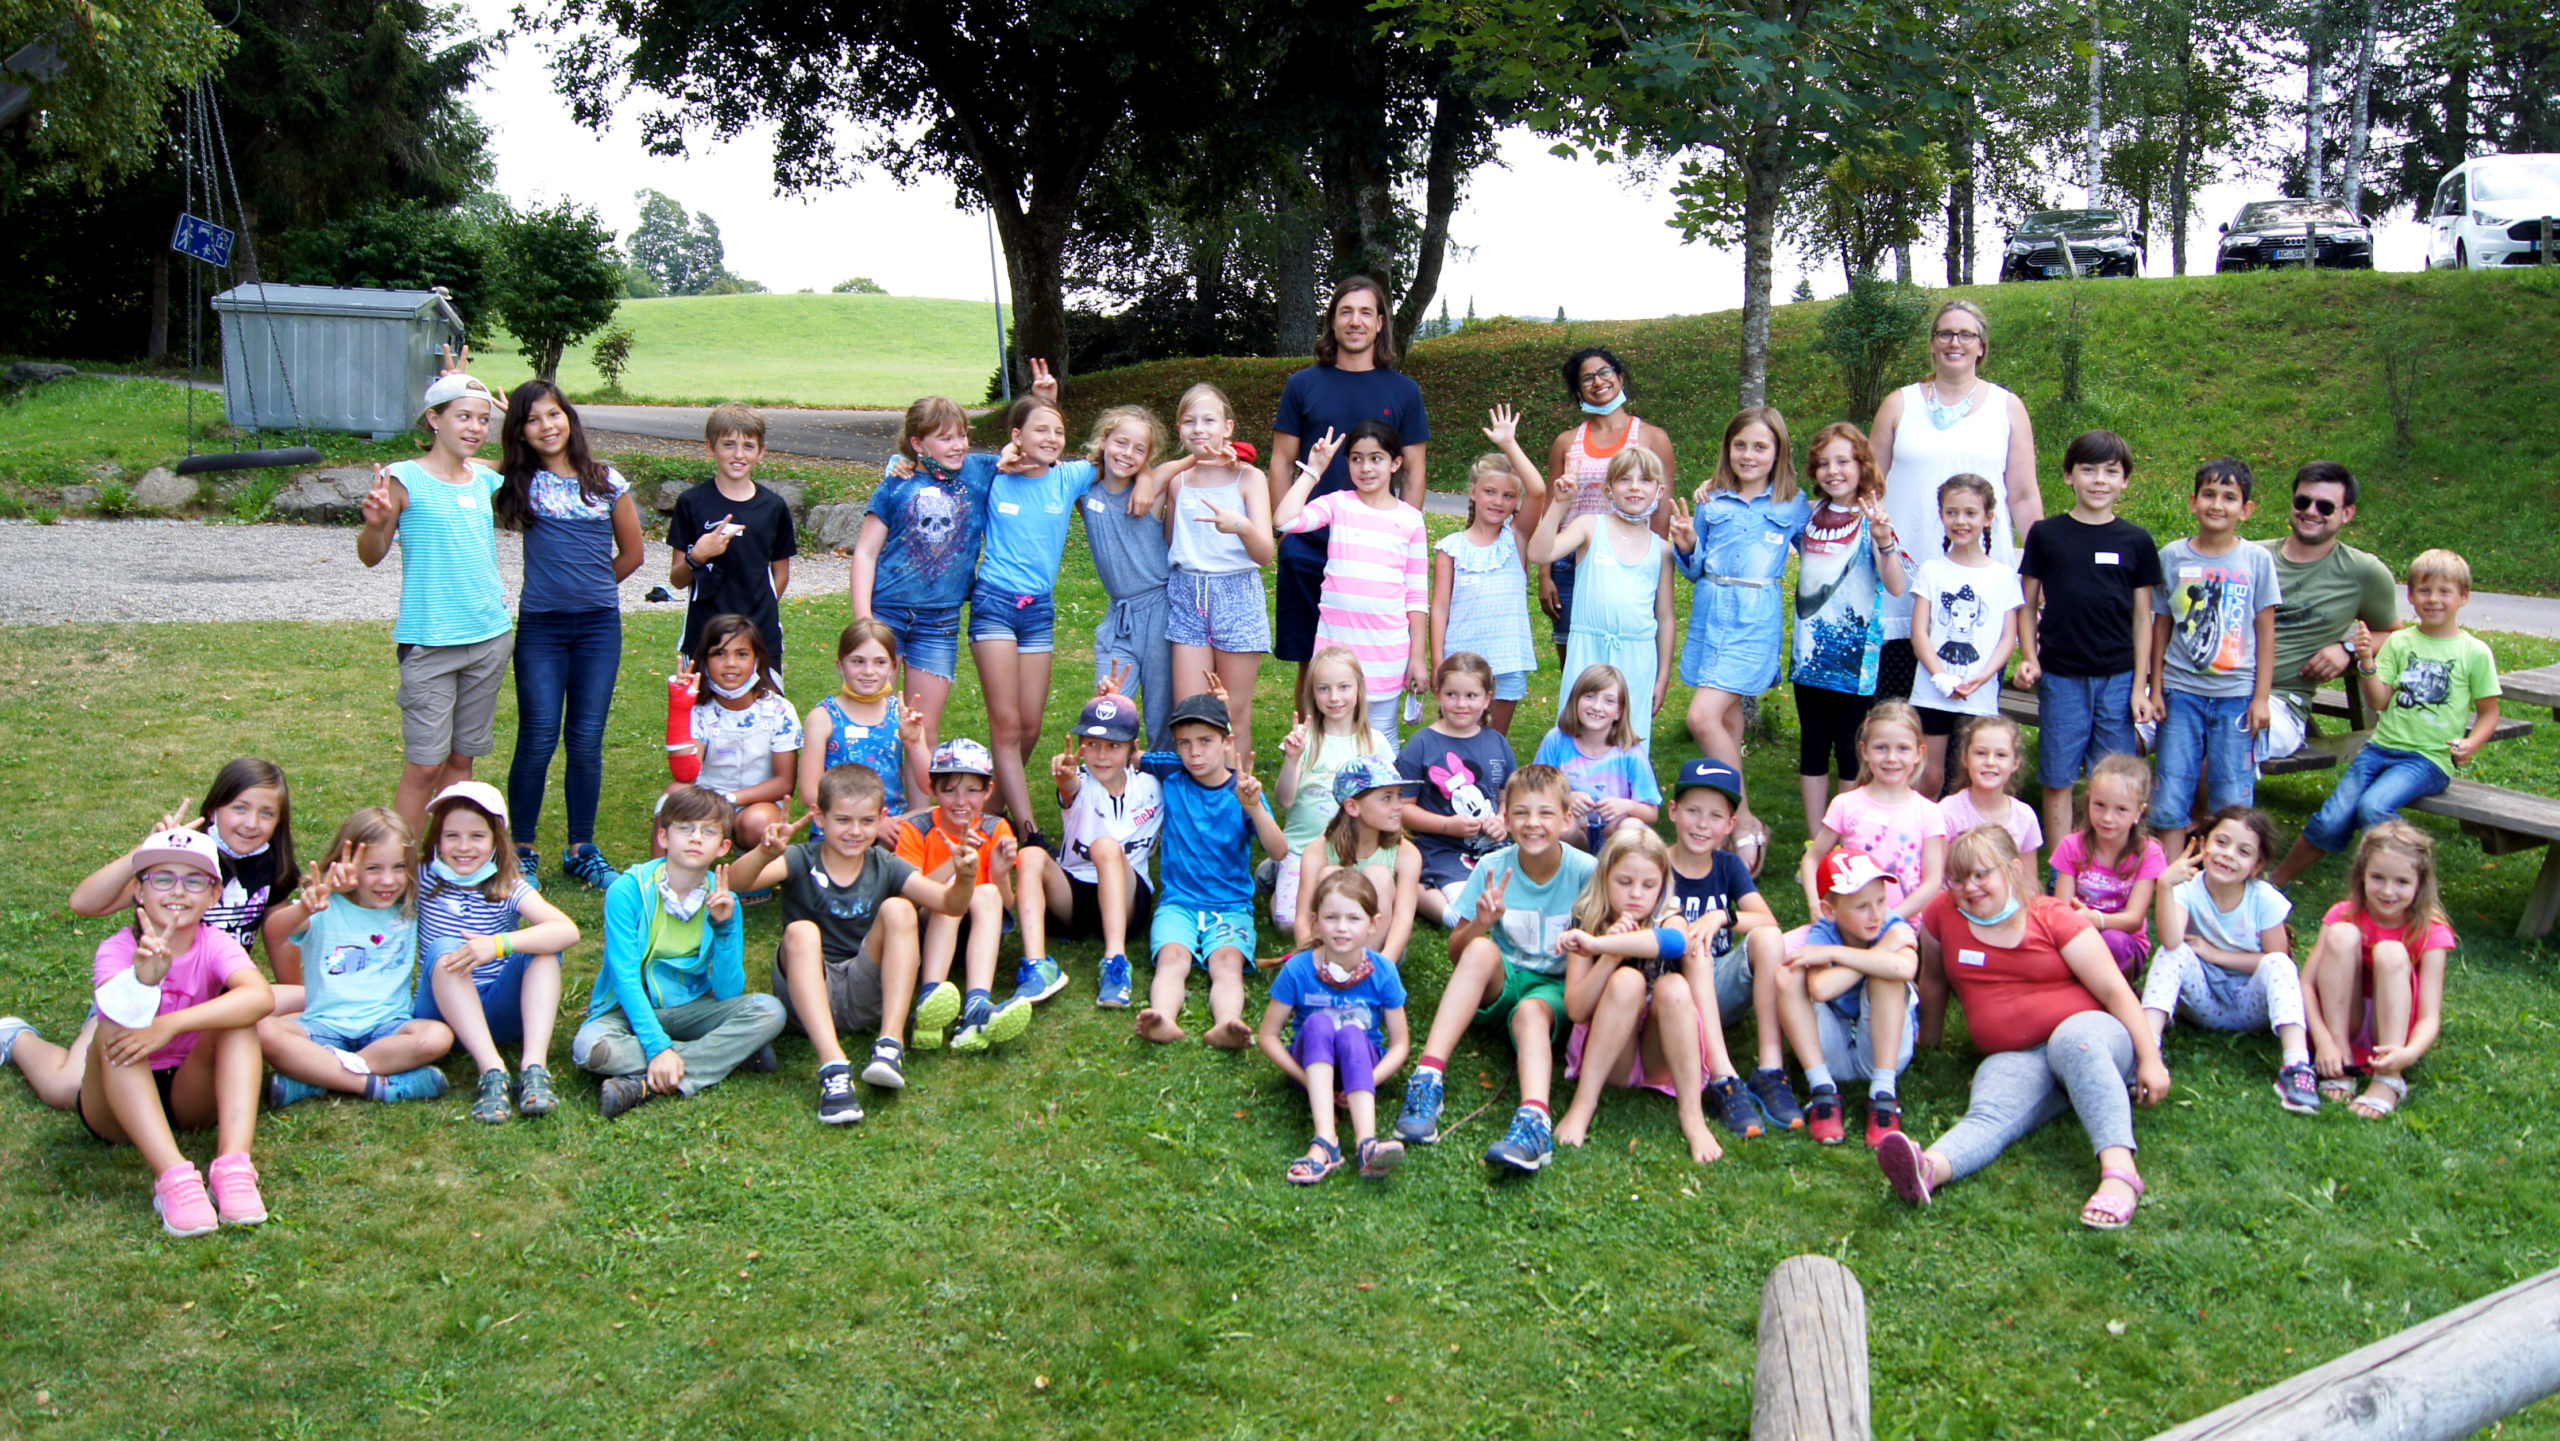 Viel Spaß beim Birklehof Summercamp: 44 Schülerinnen und Schüler, 4 Lehrkräfte und eine Betreuerin.